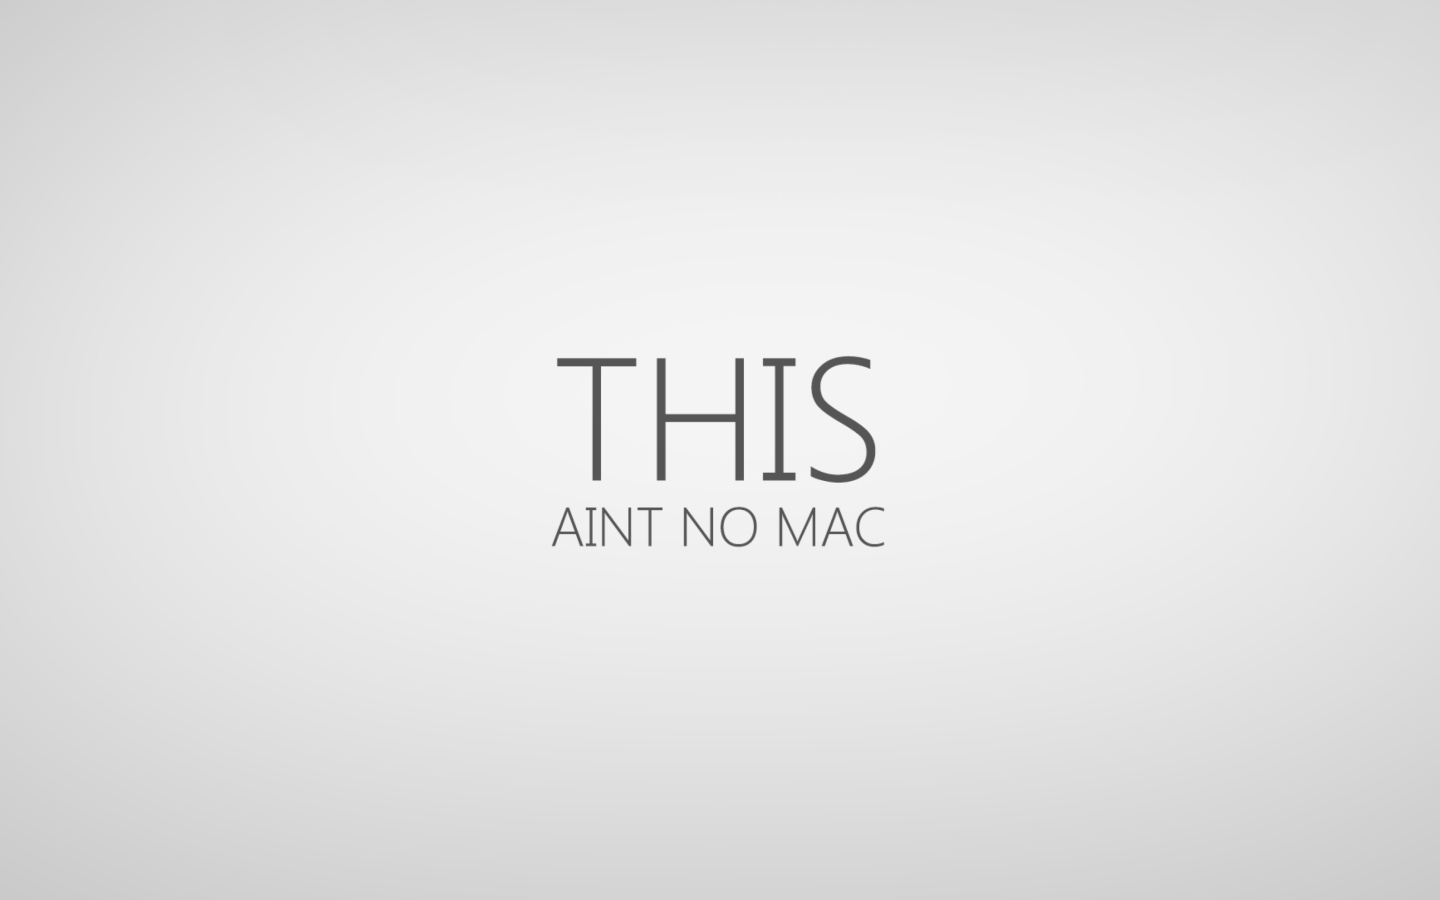 Sfondi This Aint No Mac 1440x900